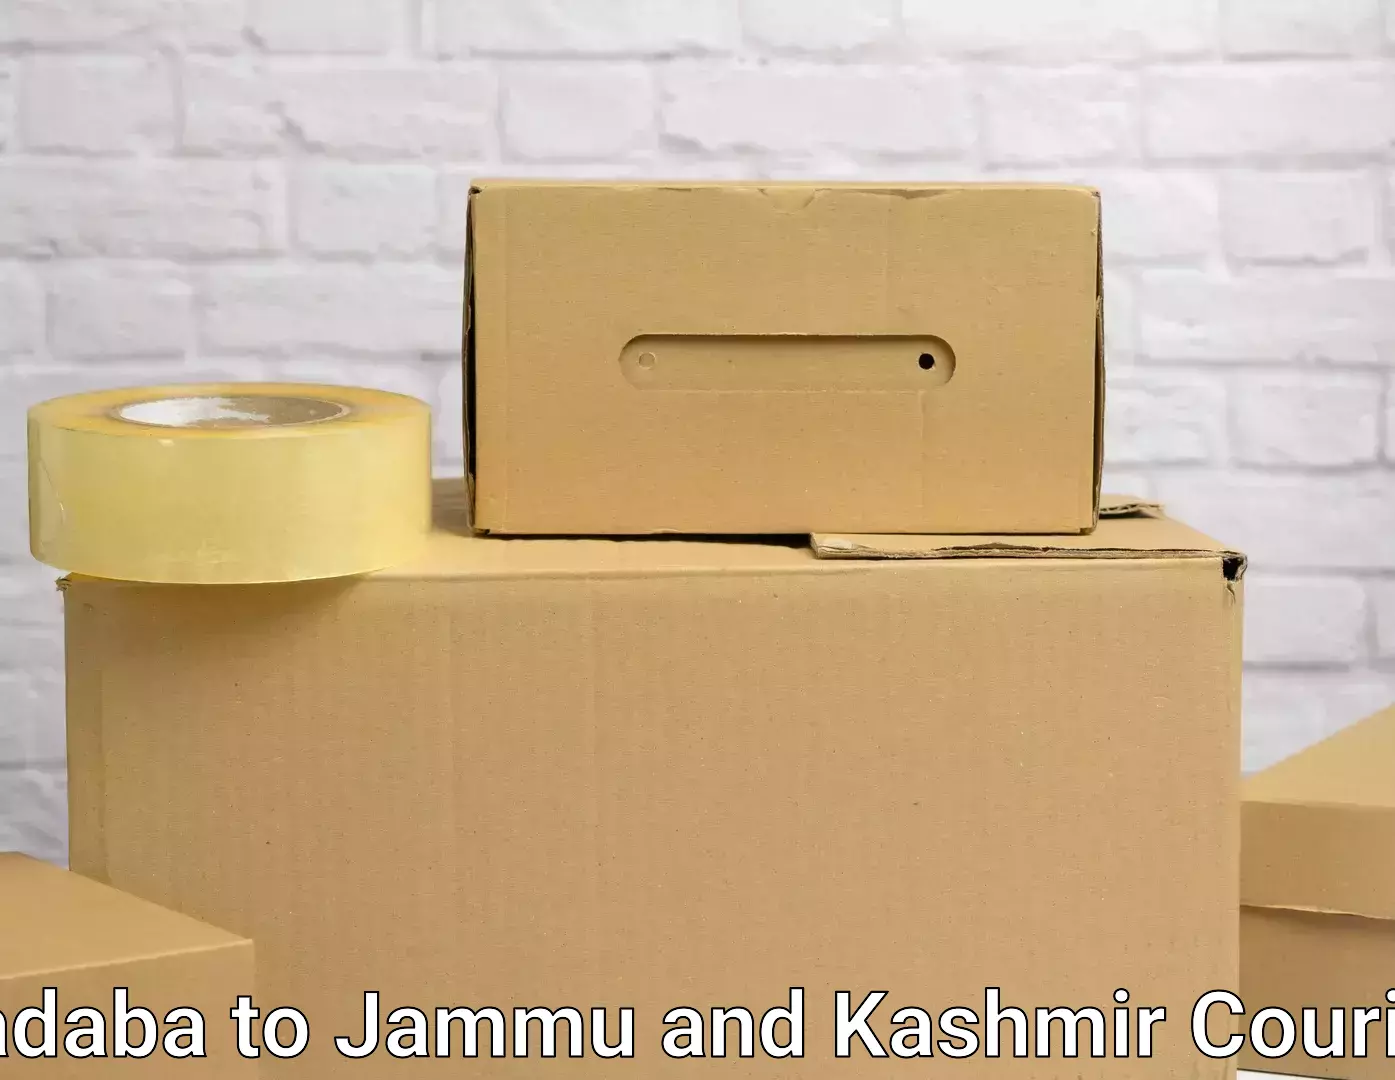 Efficient household moving Kadaba to University of Jammu